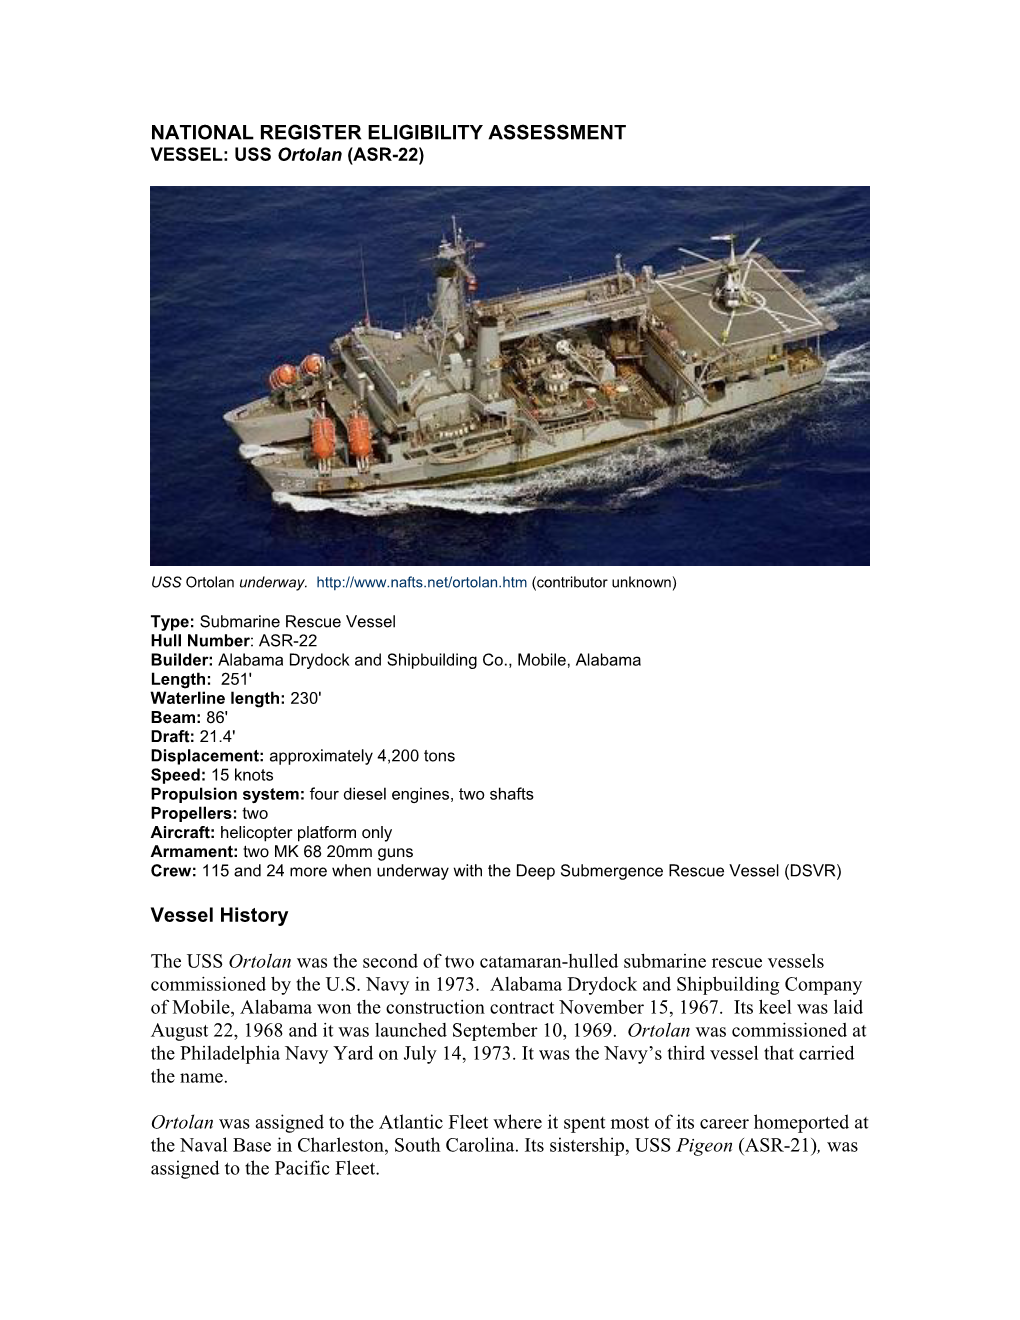 NATIONAL REGISTER ELIGIBILITY ASSESSMENT VESSEL: USS Ortolan (ASR-22)